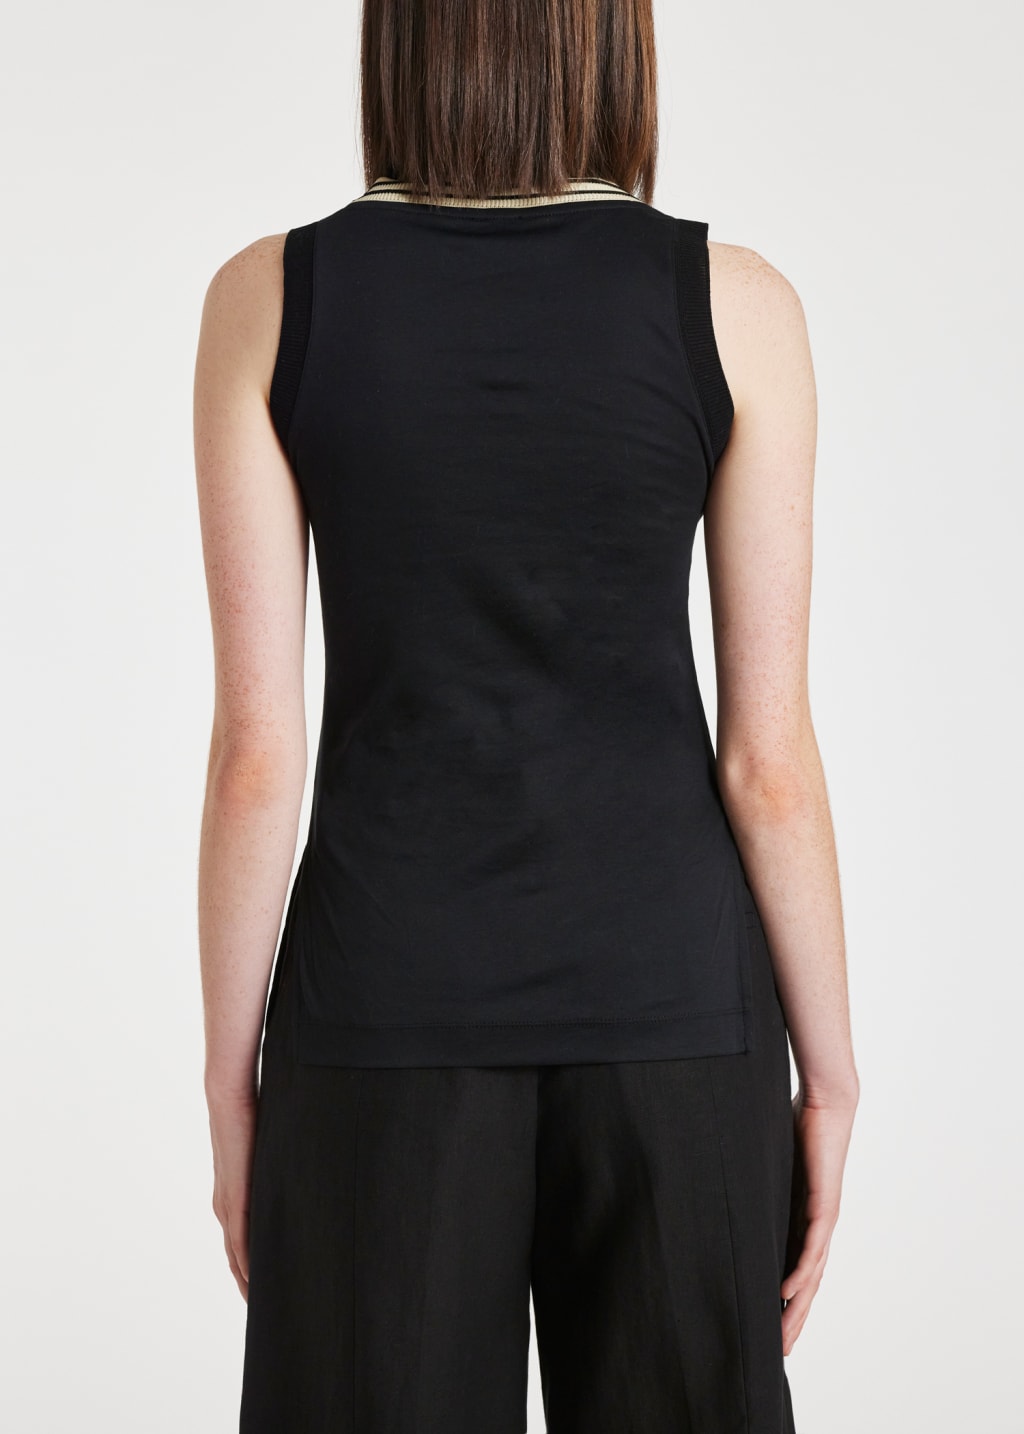 Model View - Women's Black Cotton Stripe Trim Vest Paul Smith